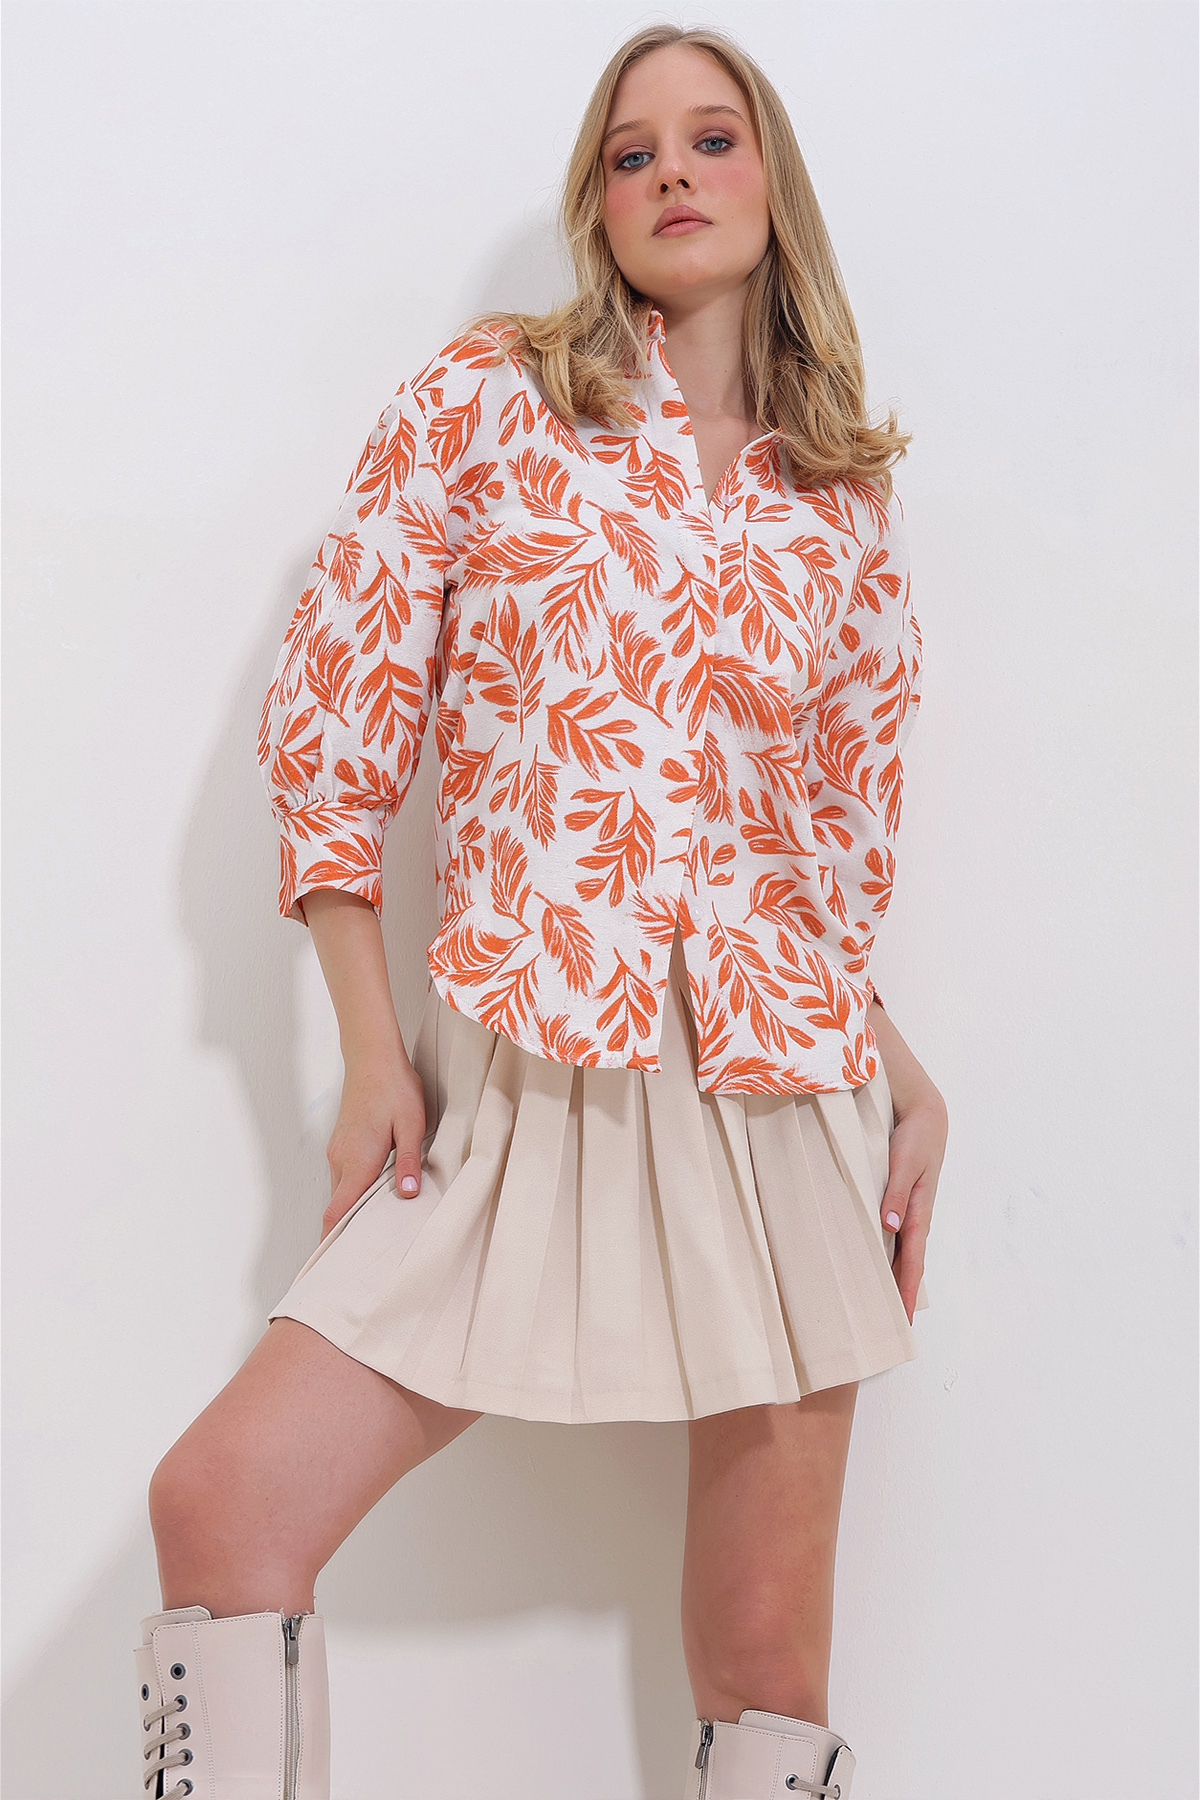 Женская льняная рубашка с оранжевыми листьями и воздушными рукавами со скрытой планкой Trend Alaçatı Stili, оранжевый